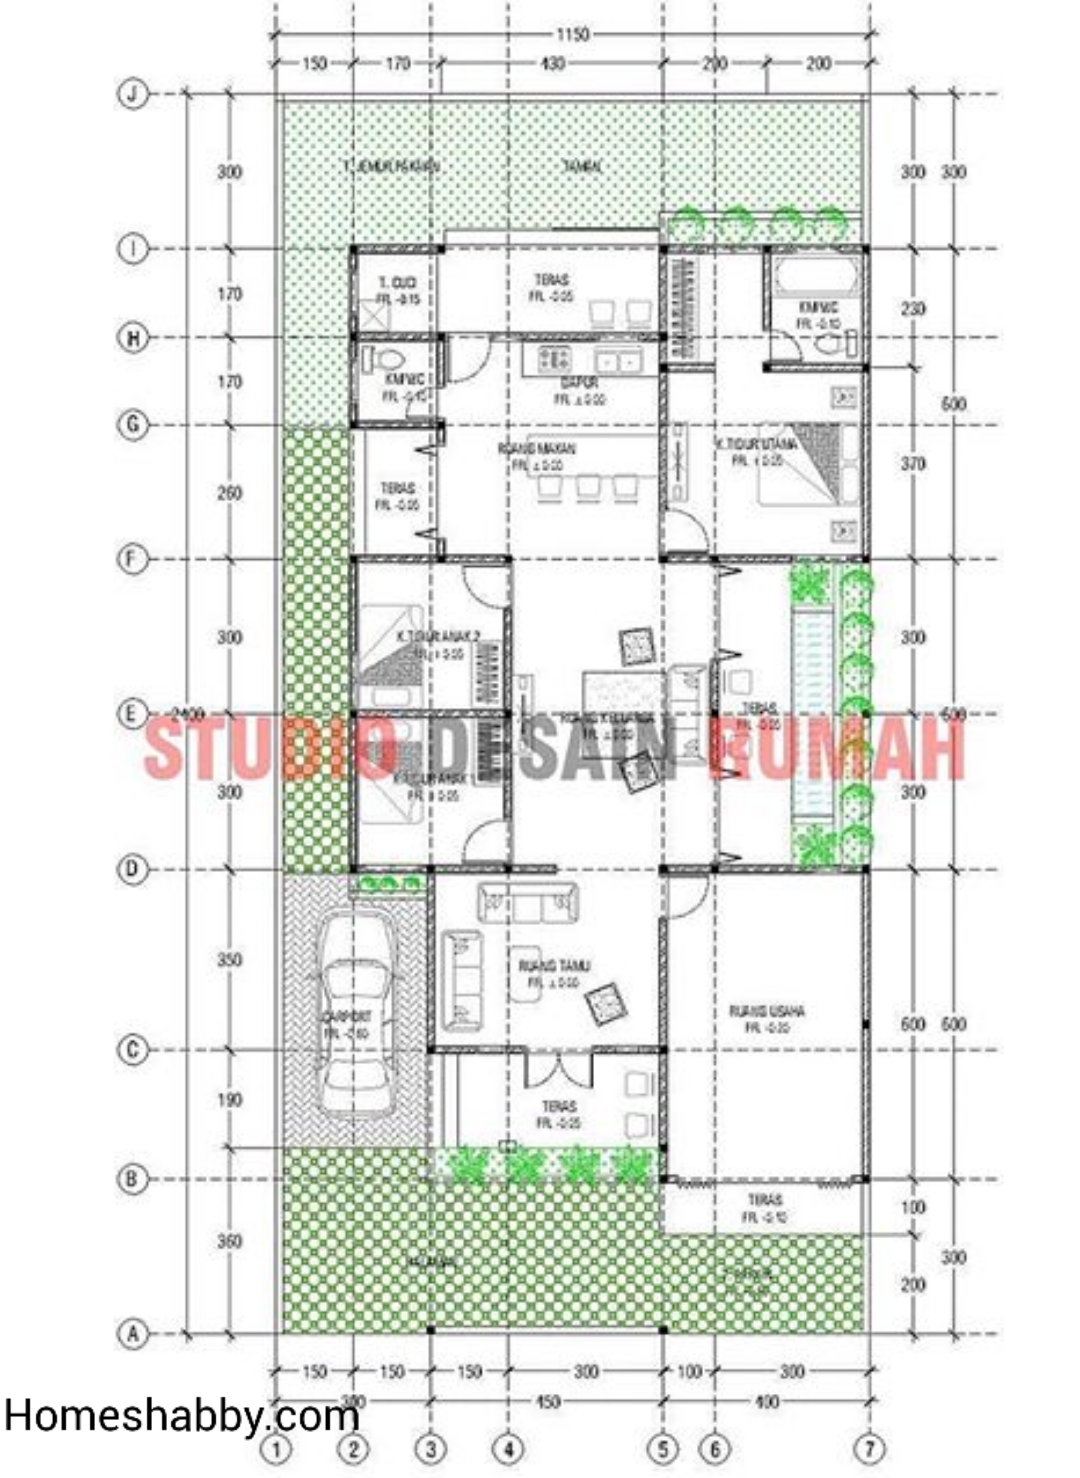 Desain Dan Denah Rumah Plus Toko Ukuran 12 X 24 M Terdapat 3 Kamar Tidur Dengan Interior Lebih Modern Homeshabbycom Design Home Plans